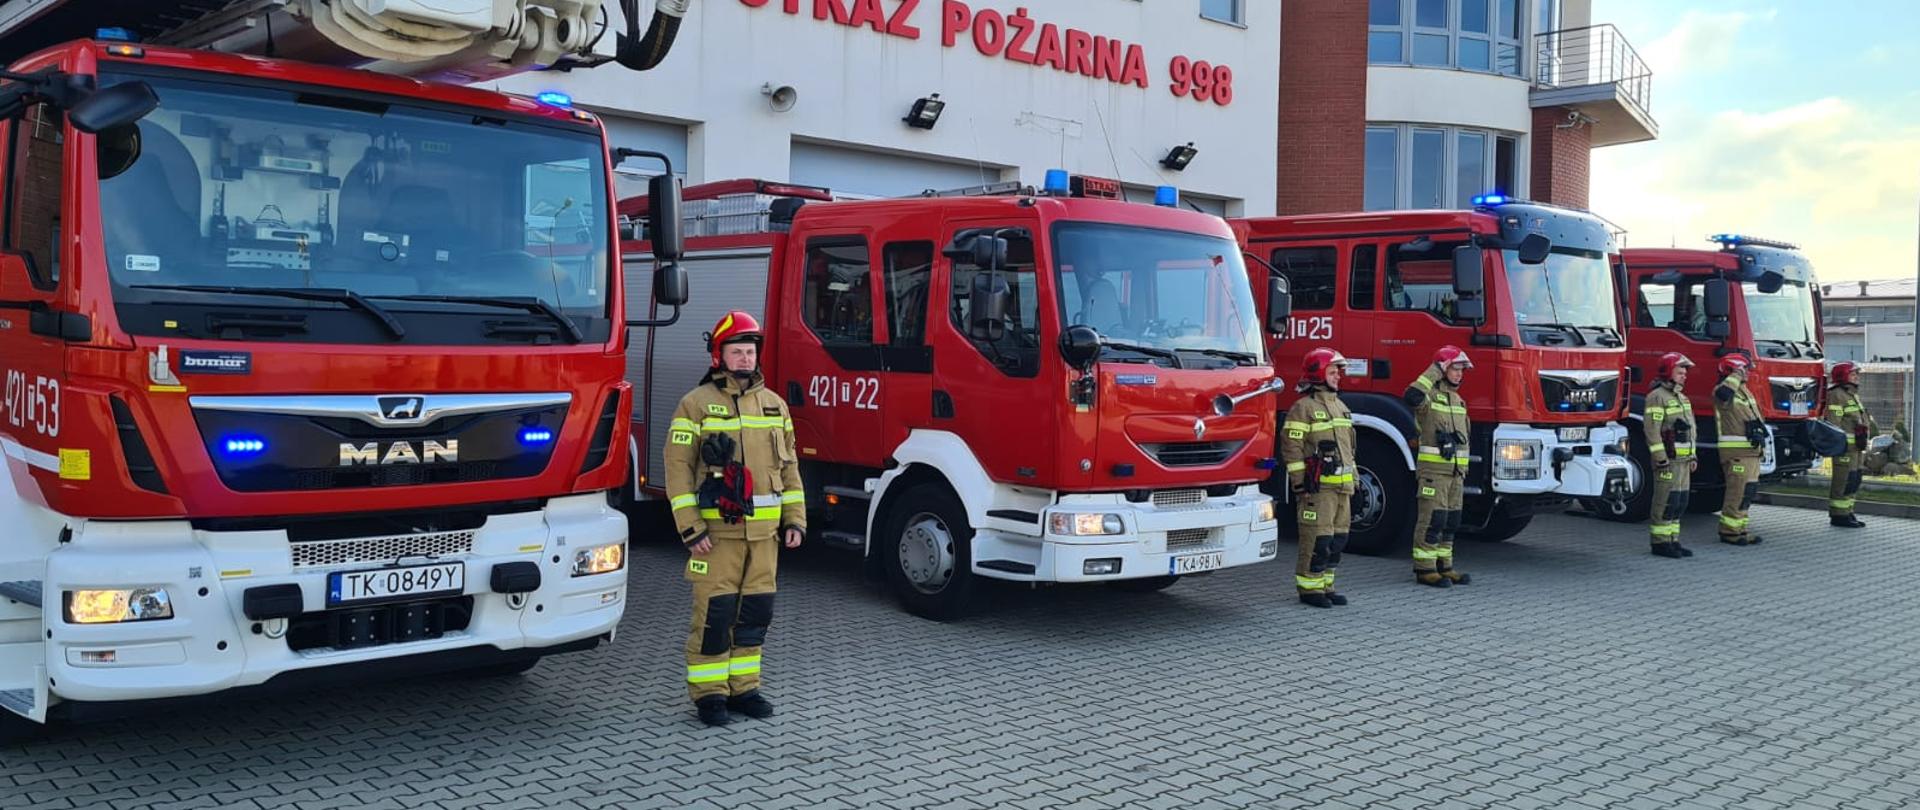 1. Kazimierscy strażacy oddali hołd ofiarom katastrofy smoleńskiej